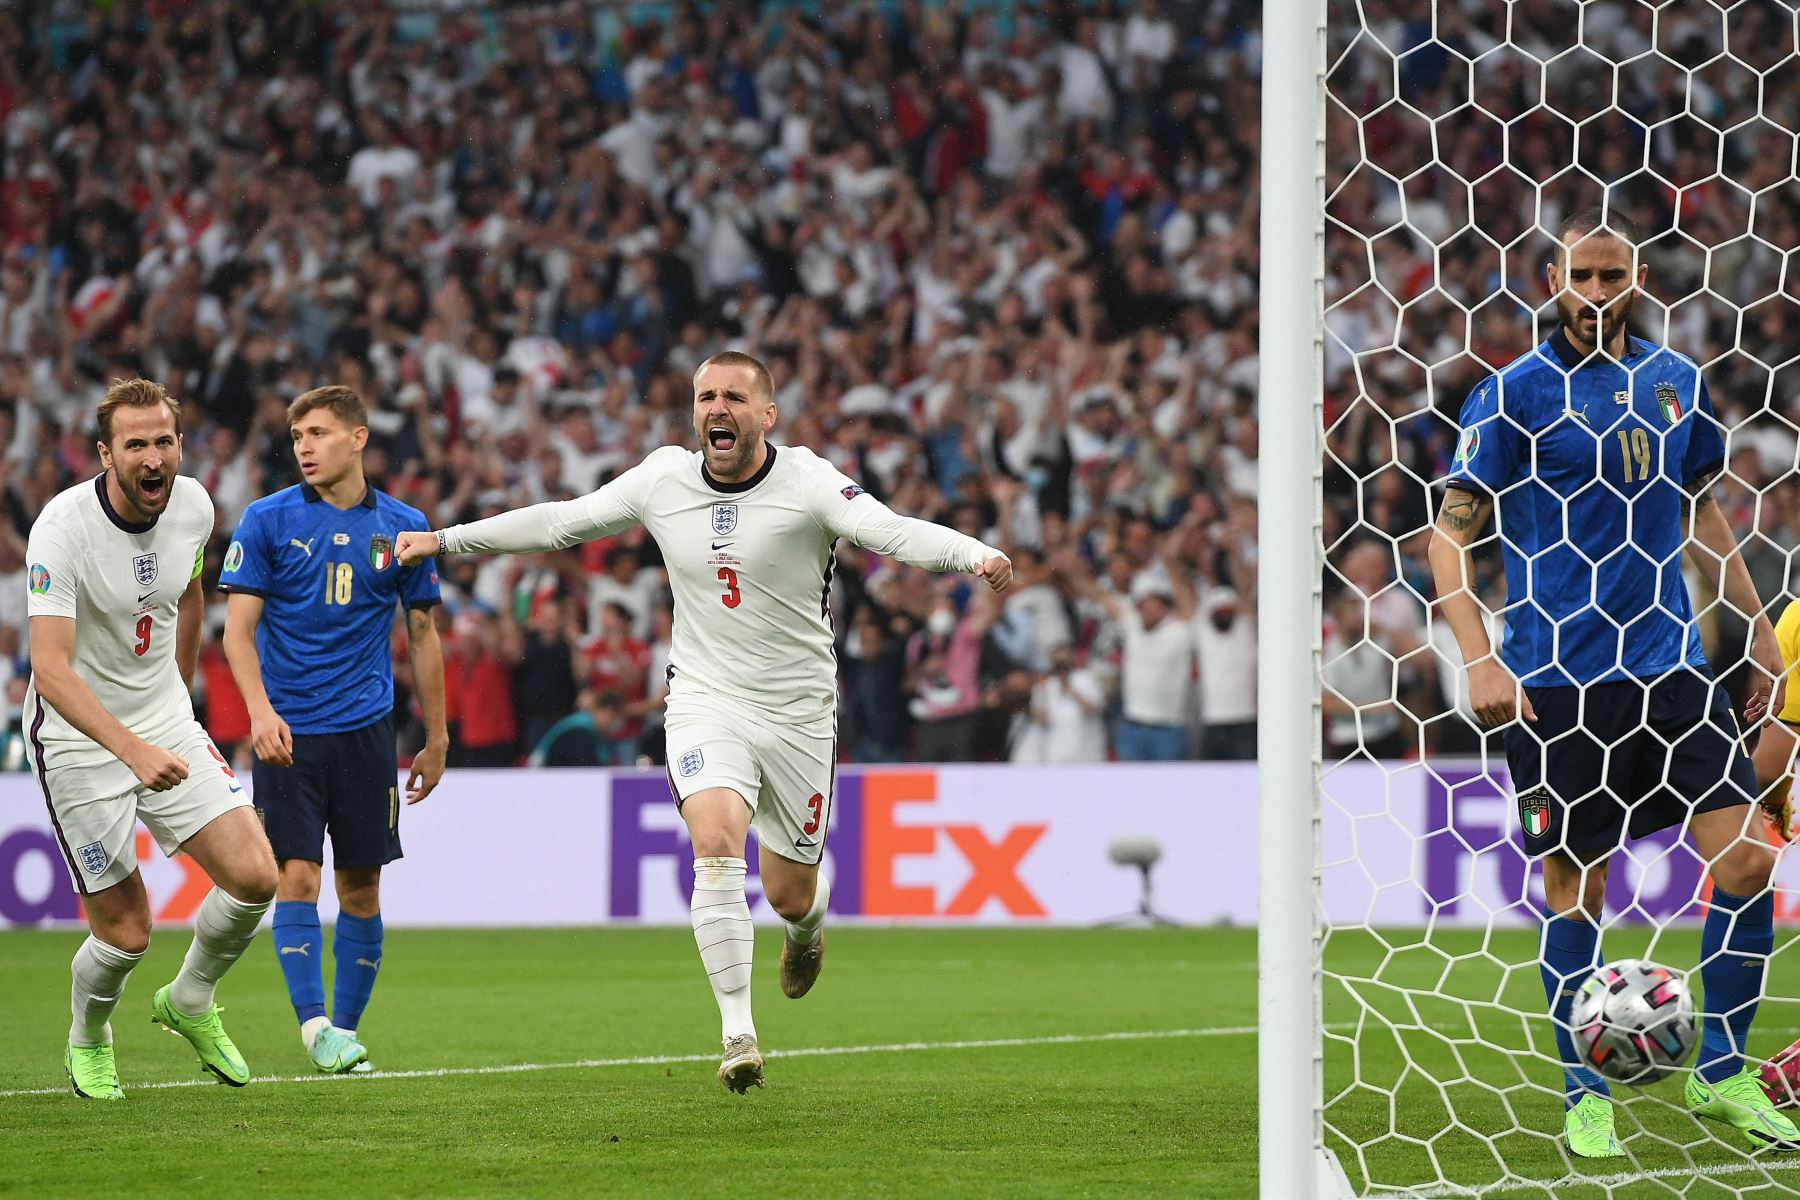 El defensor de Inglaterra Luke Shaw celebra después de anotar el gol de apertura durante el partido de fútbol final de la UEFA EURO 2020 entre Italia e Inglaterra en el estadio de Wembley en Londres.
Foto: AFP